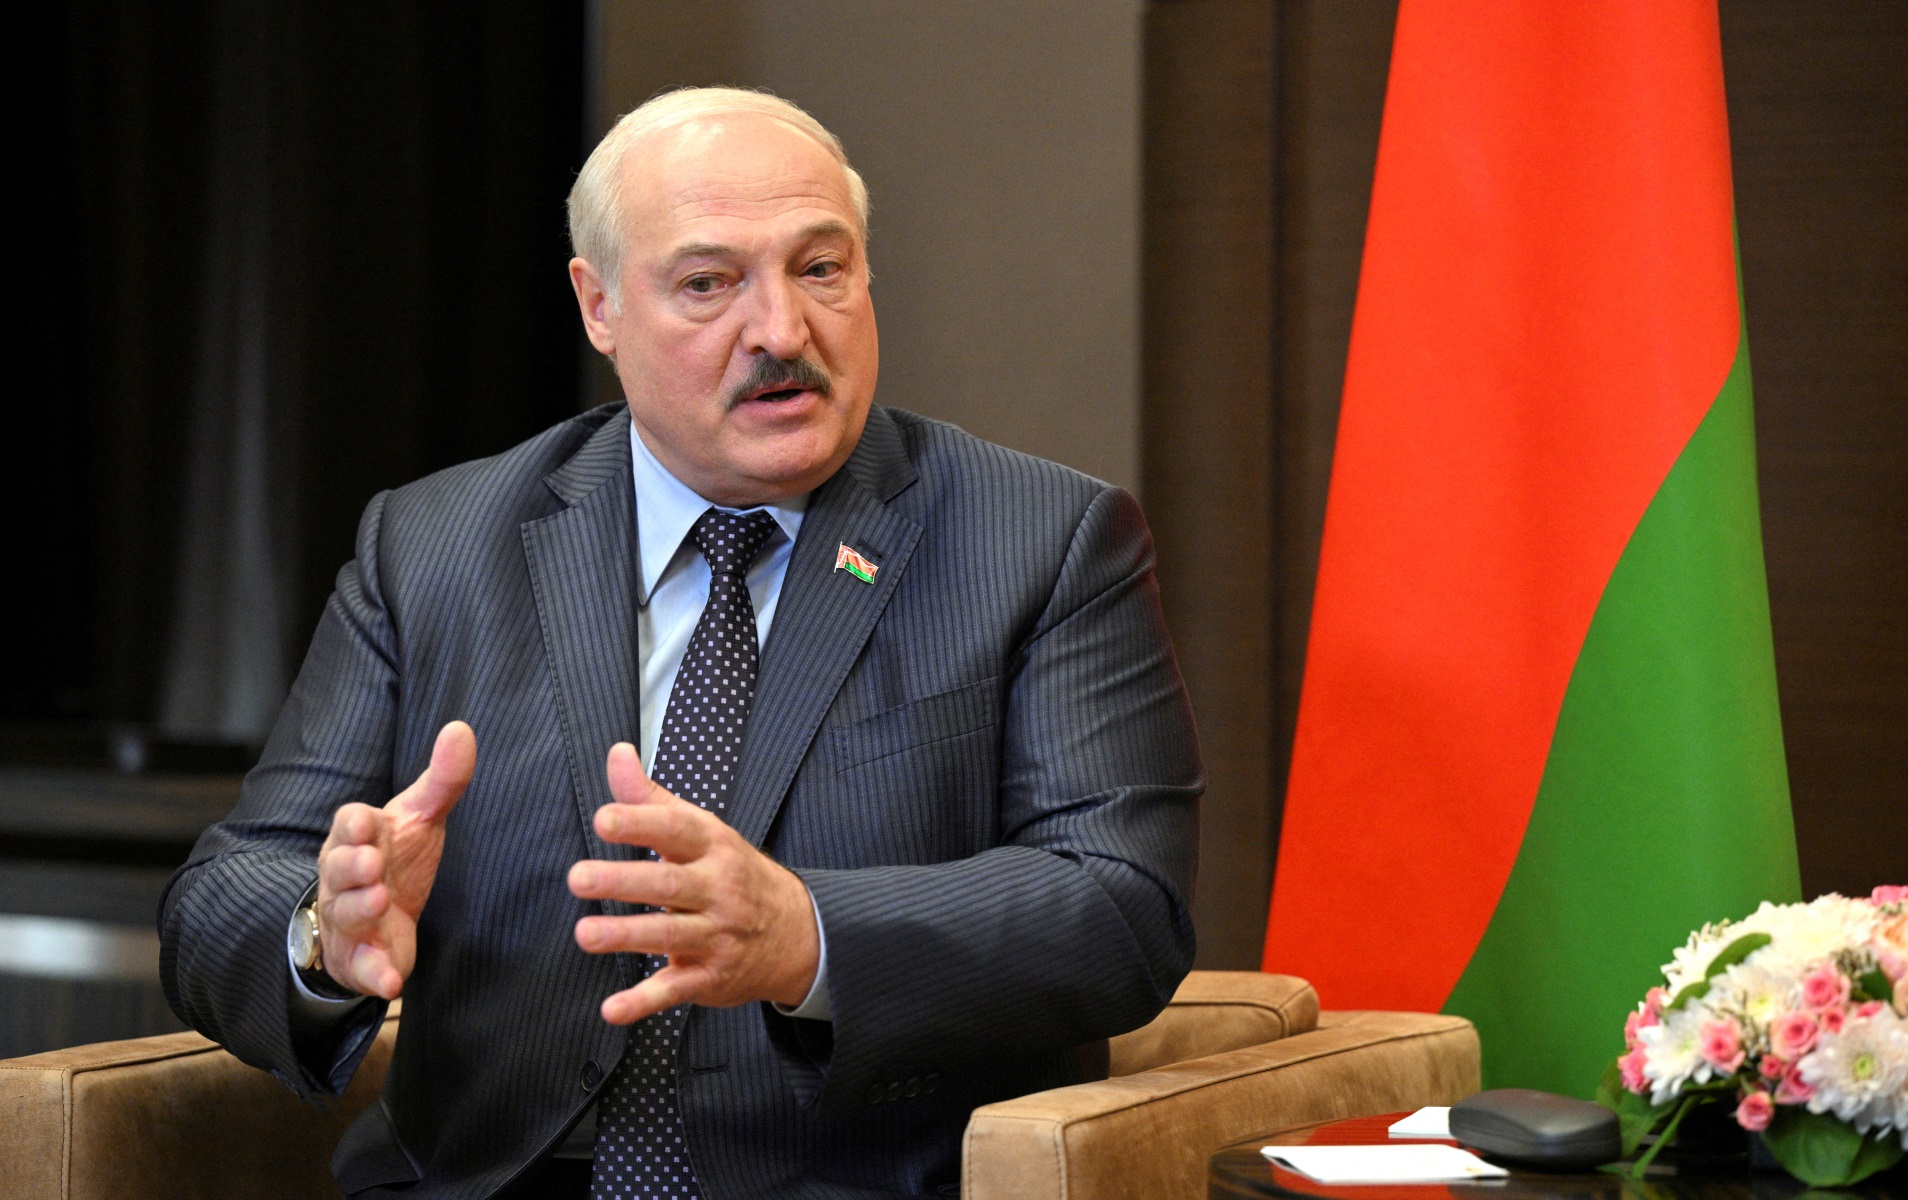 Η Λευκορωσία ανακαλεί τον πρέσβη της στη Βρετανία εξαιτίας των κυρώσεων που  έχουν επιβληθεί